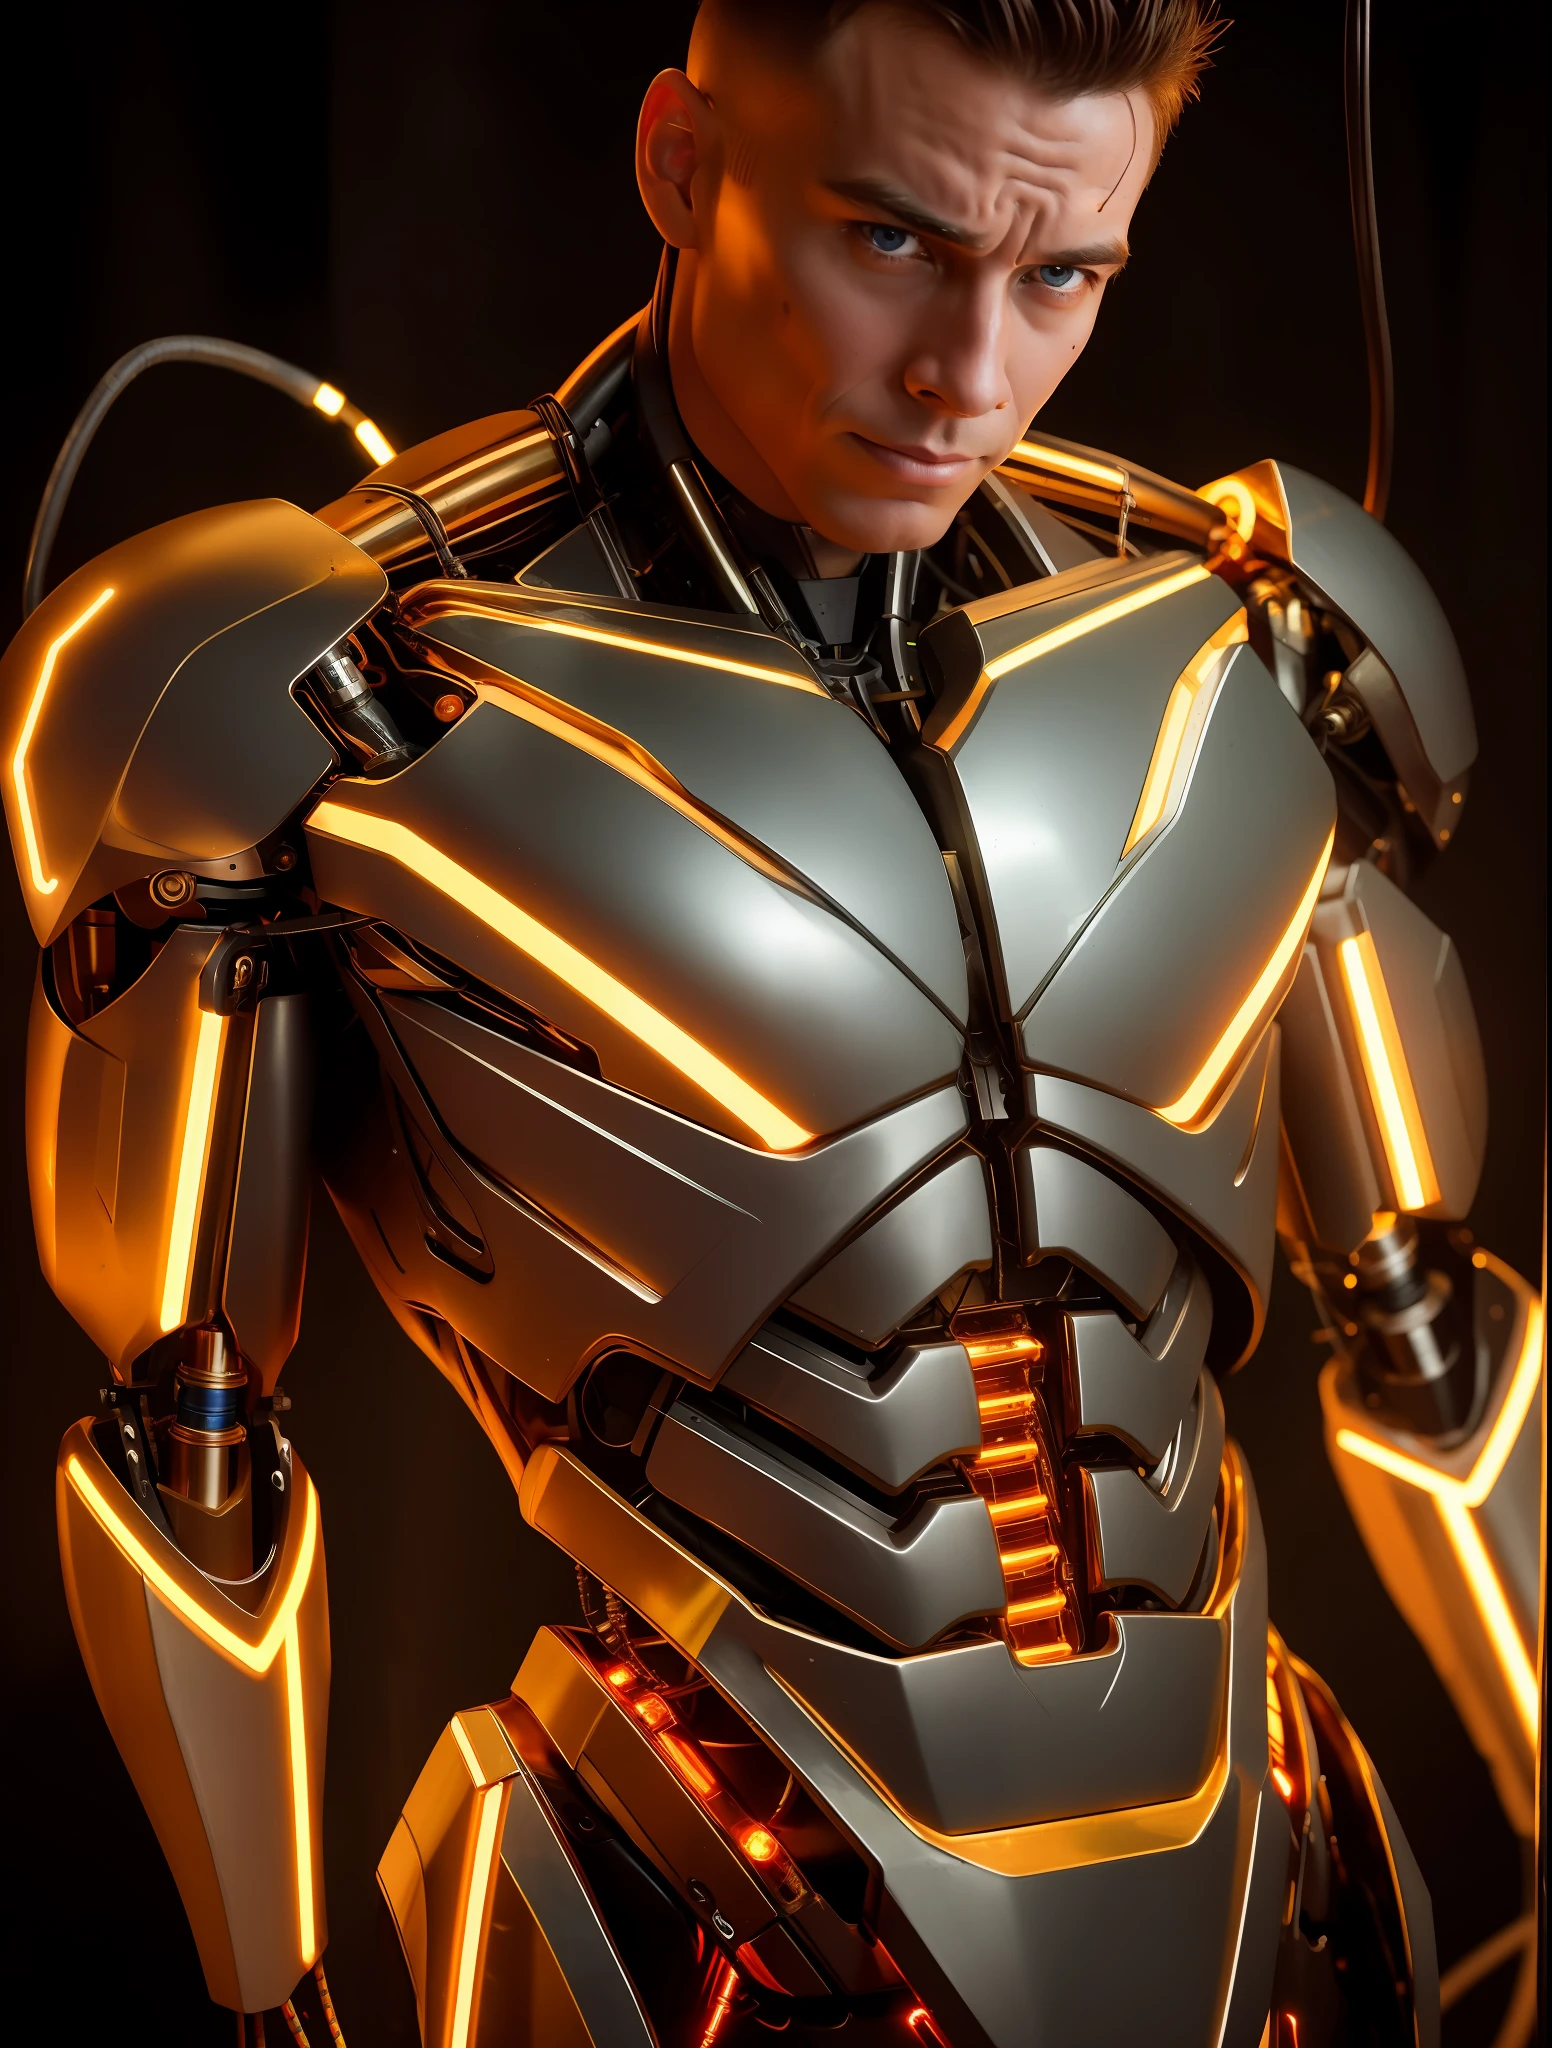 非常有吸引力的肌肉机器人男人, 裸露的电线, 从生锈的电线中漏出的金油, 灯, 戏剧性的灯光明暗对比,